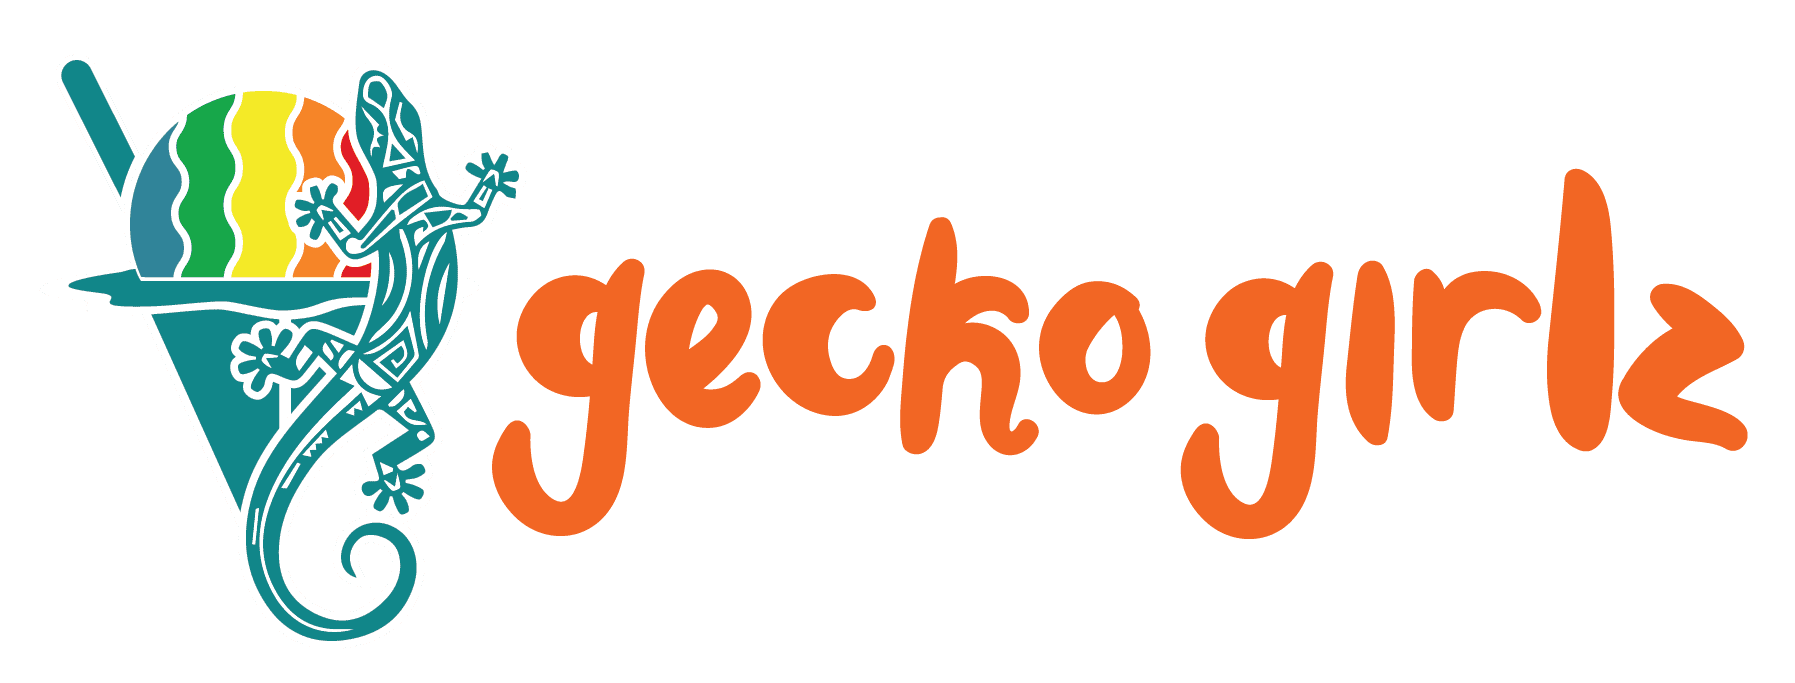 Gecko Girlz